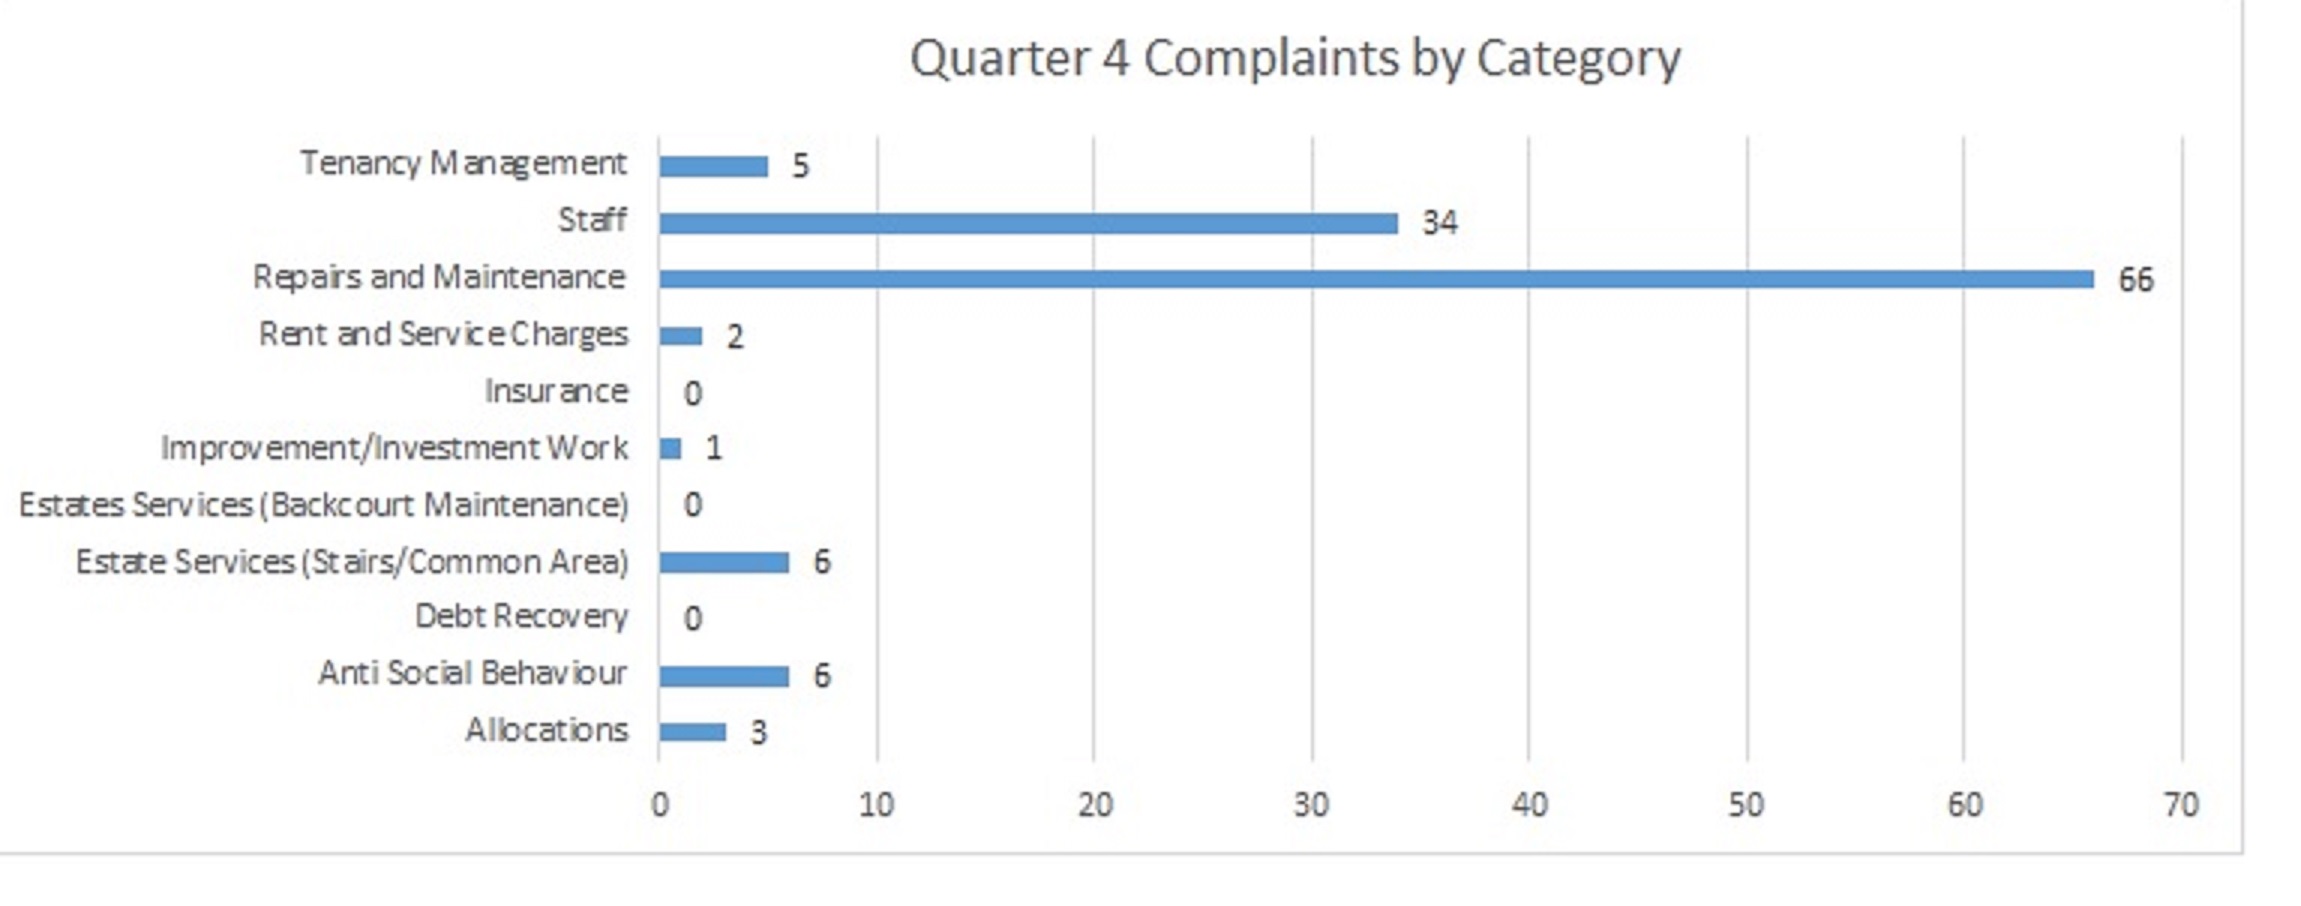 Q4 complaints 2022/23